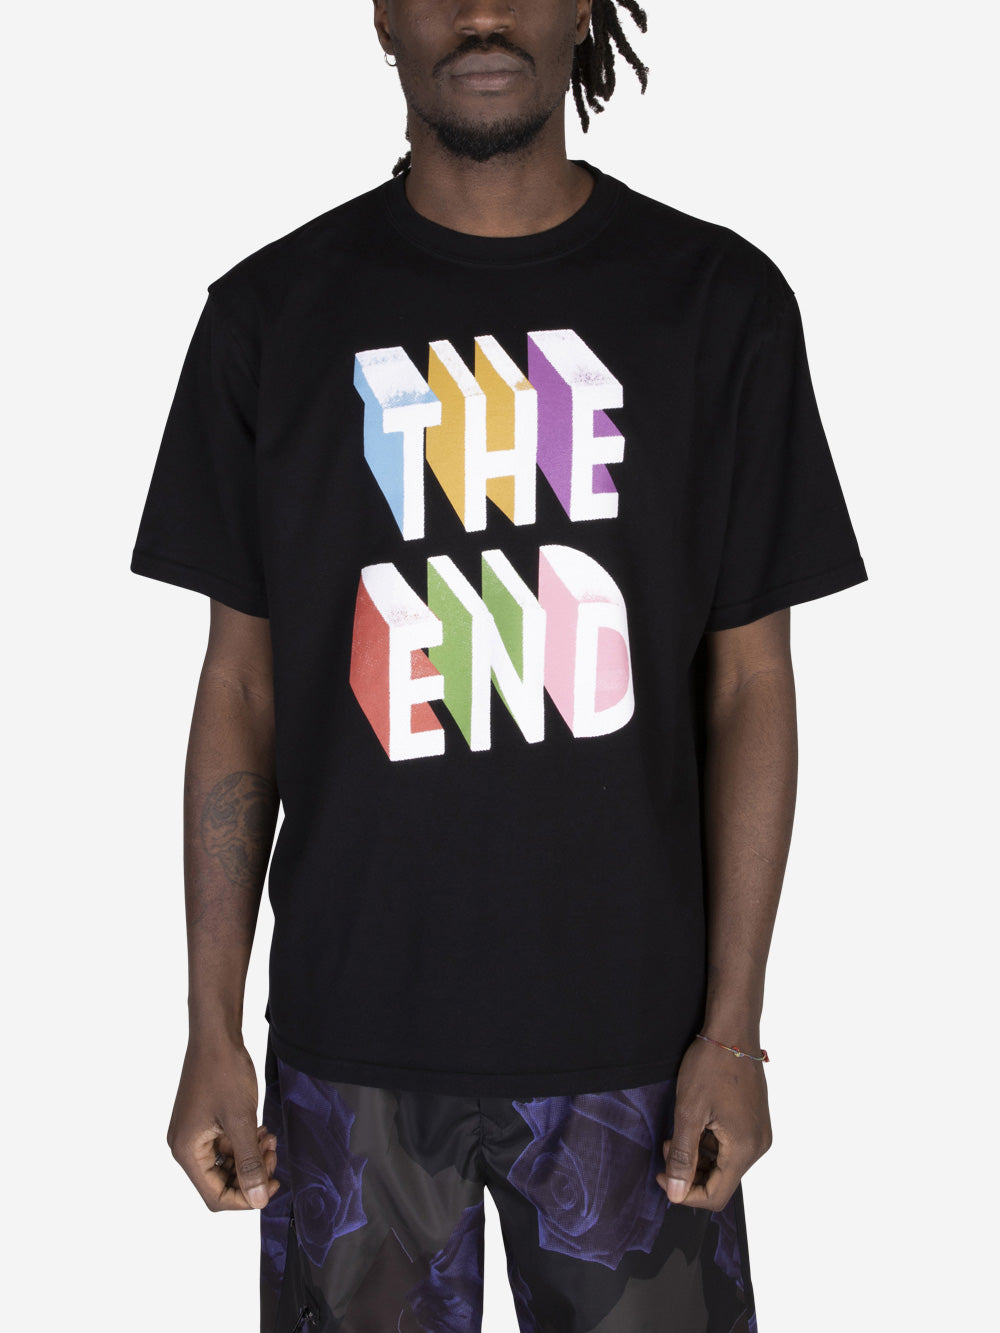 UNDERCOVER T-shirt 'The End' Nero Urbanstaroma